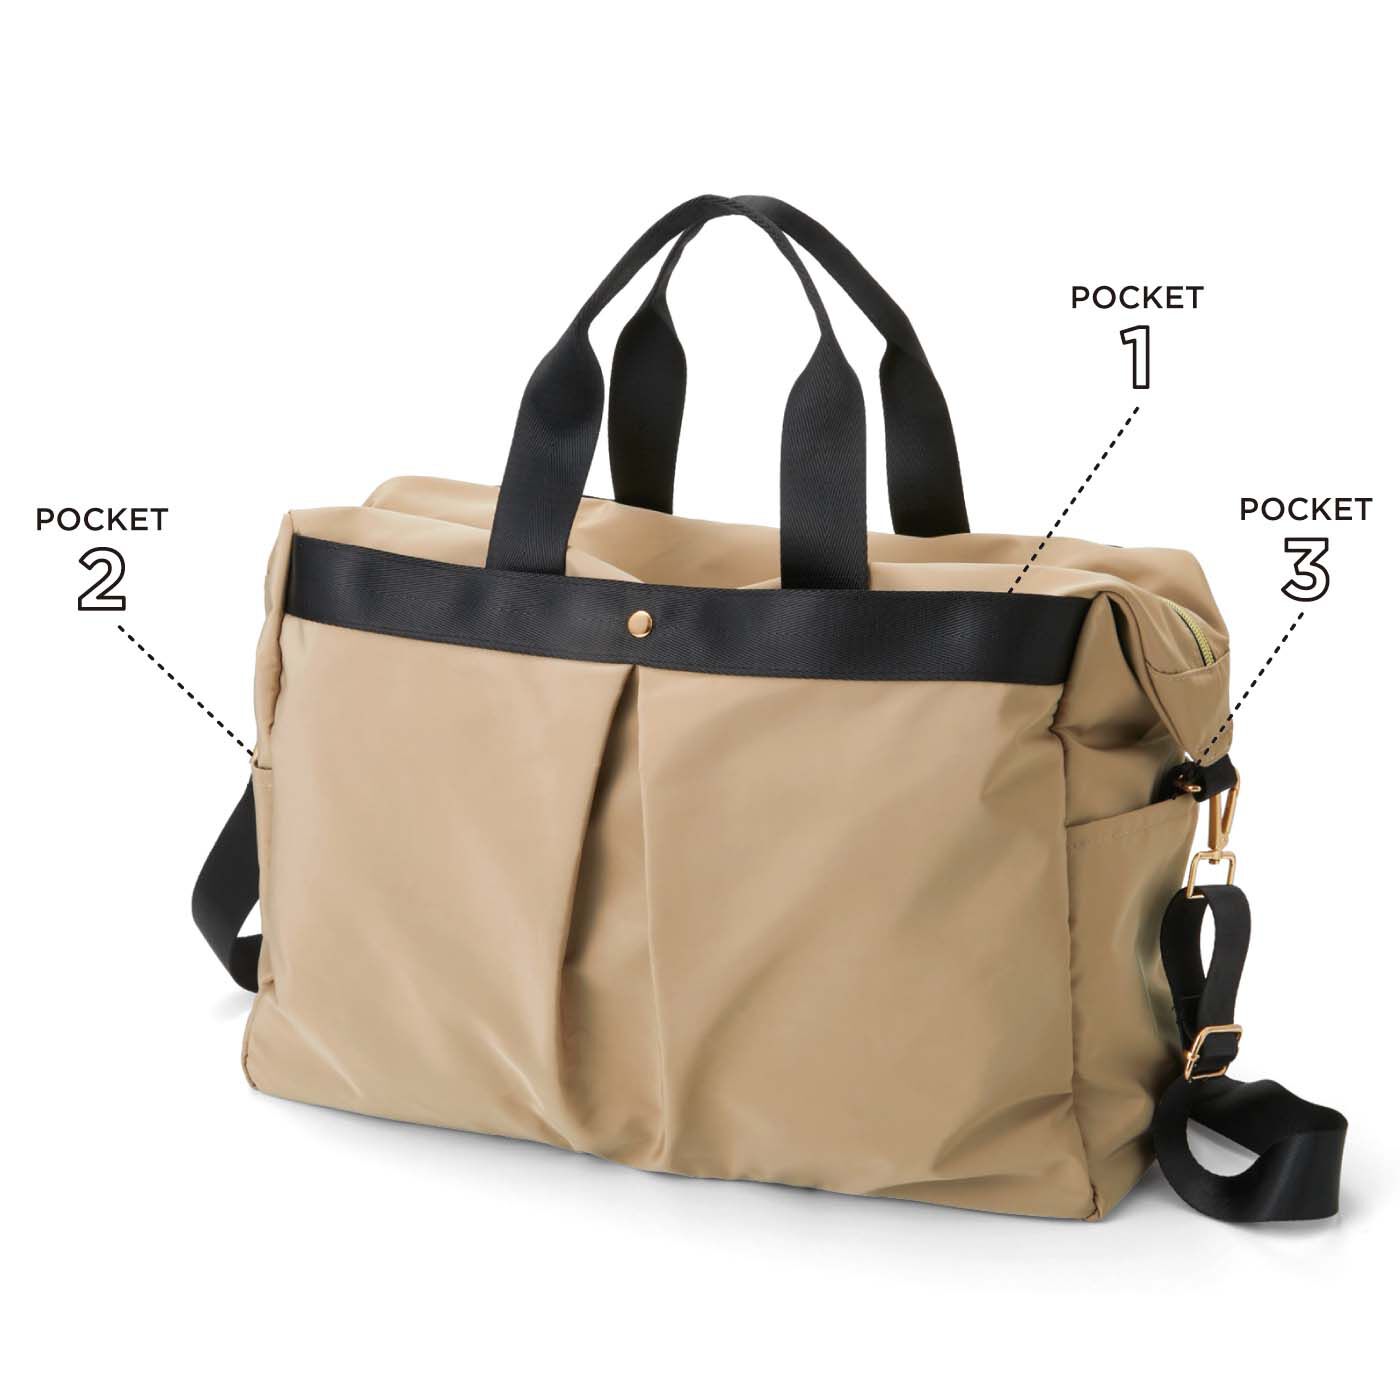 フェリシモの雑貨 Kraso|7ポケットで使いやすい 大きめボストンバッグ|大小合わせて7つのポケット付き。